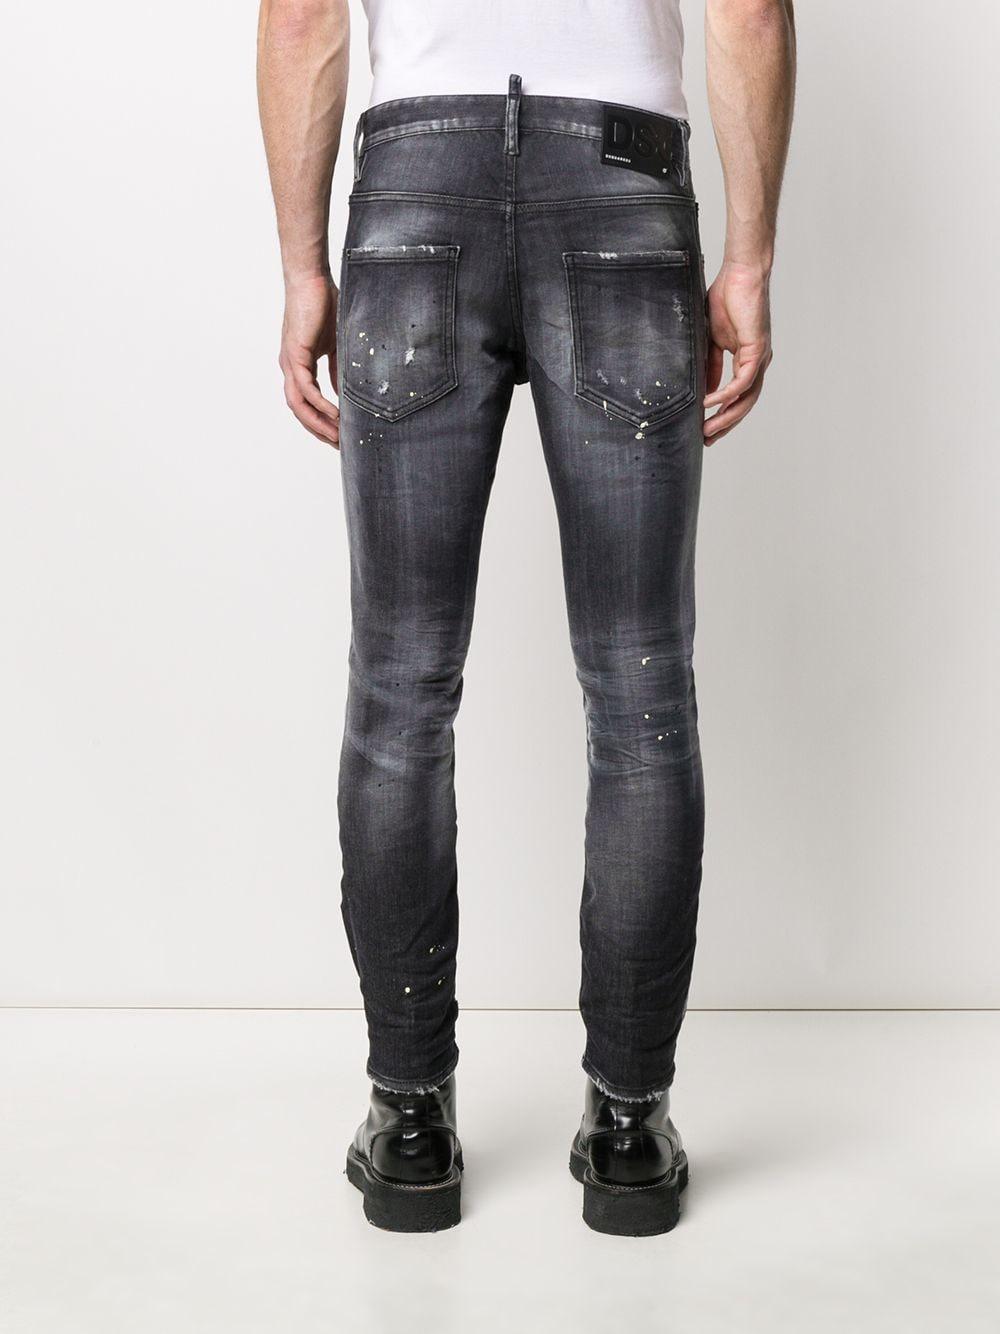 DSquared² Denim Skater Ripped Skinny Jeans in Black for Men - Save 25% ...